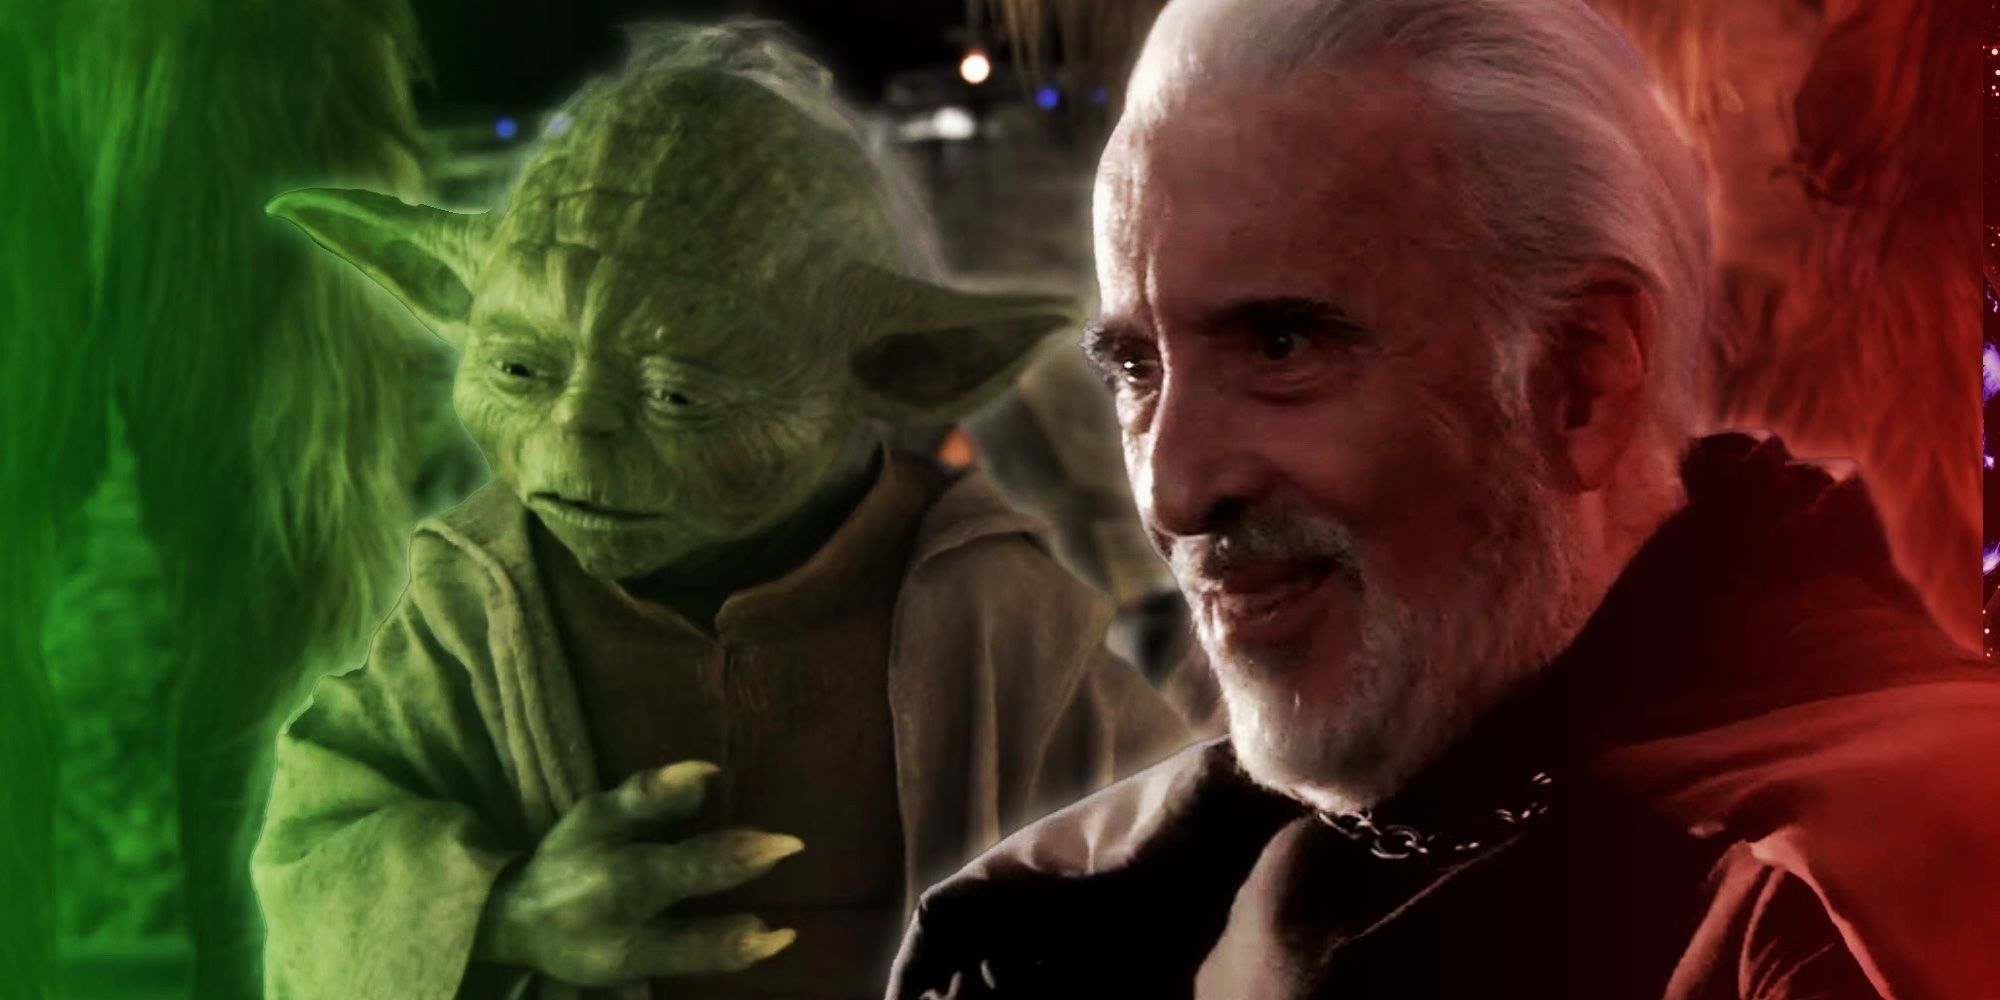 Canon de Star Wars ha entendido completamente mal la caída de los Jedi